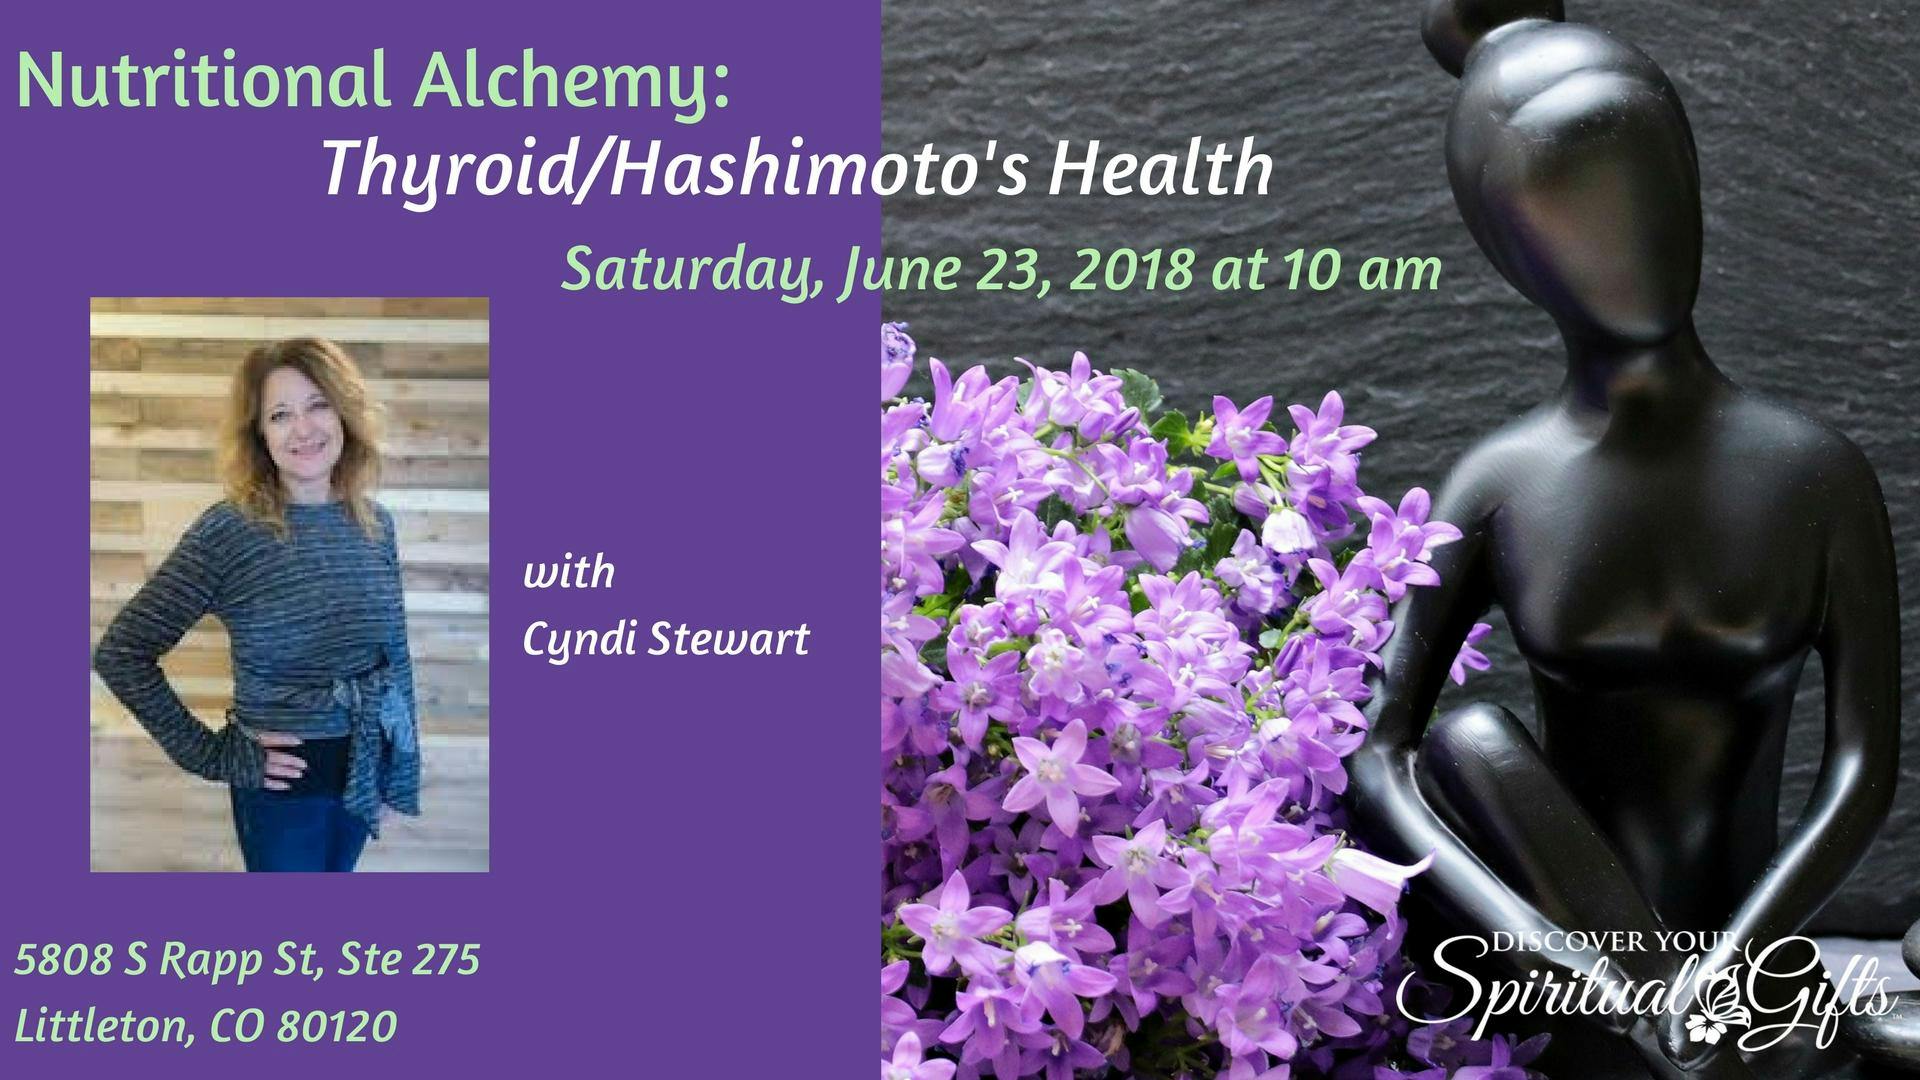 Nutritional Alchemy: Thyroid/Hashimoto’s Health with Cyndi Stewart